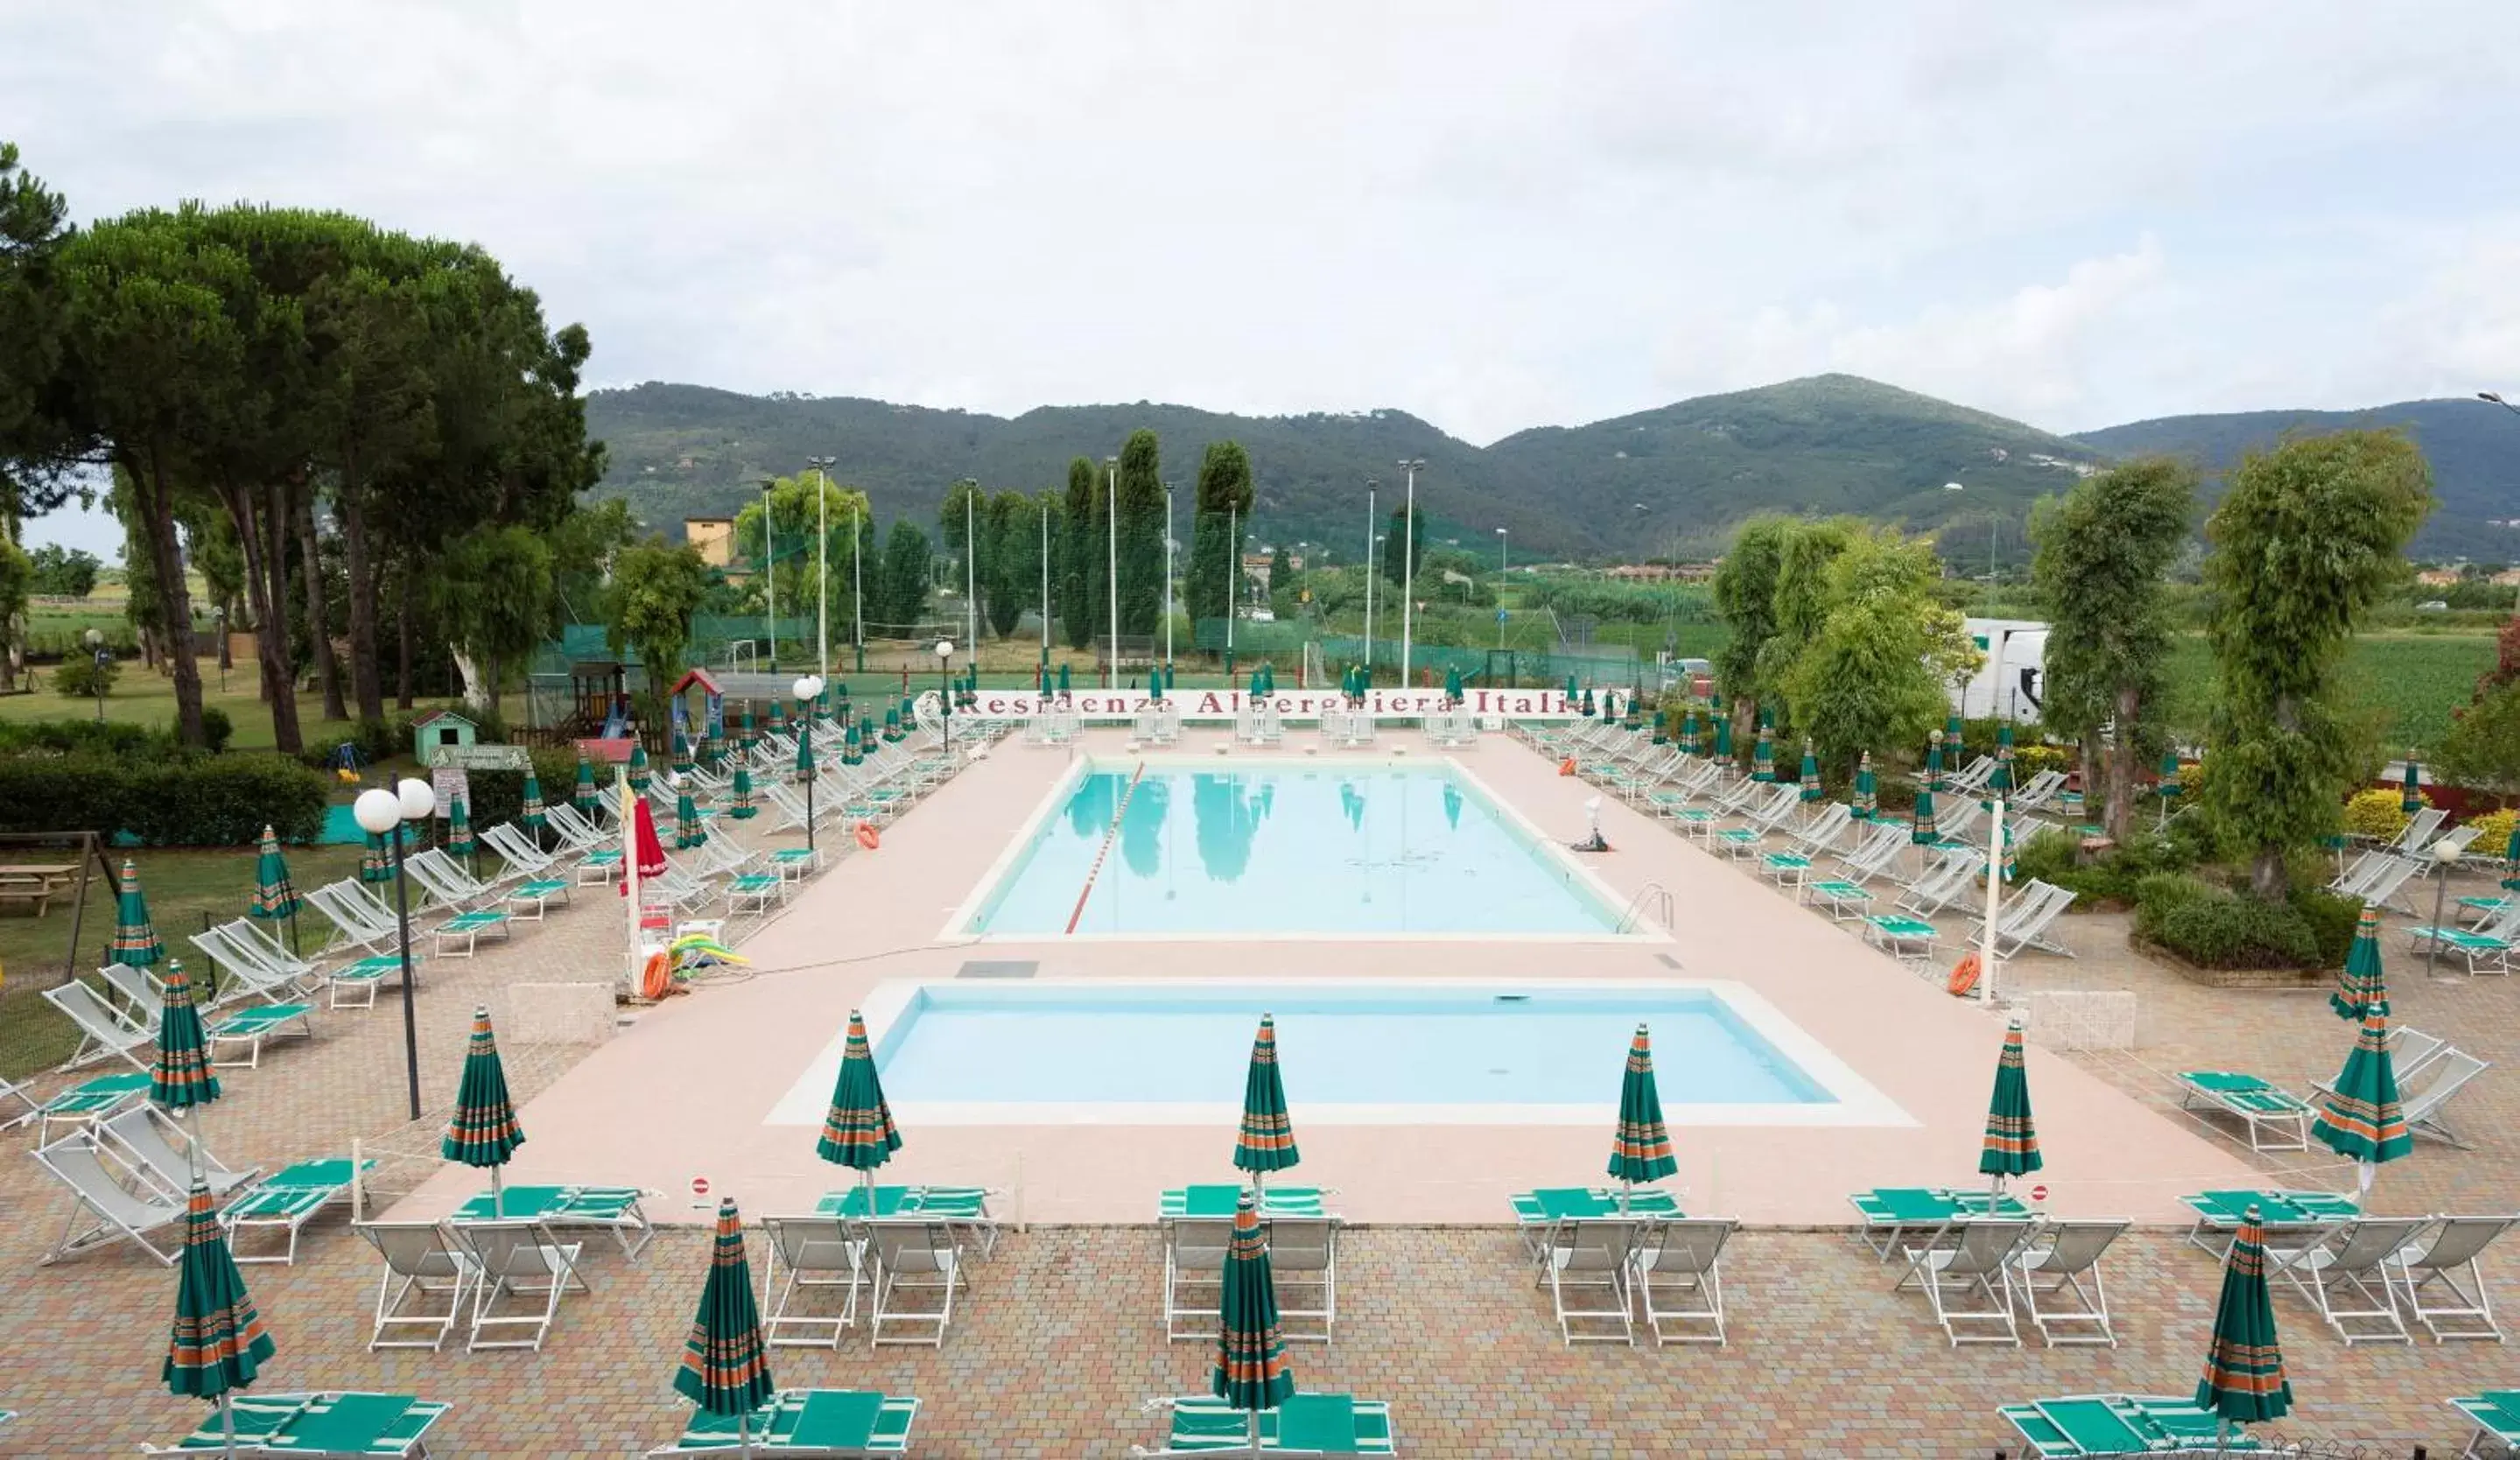 Pool View in Residenza Alberghiera Italia